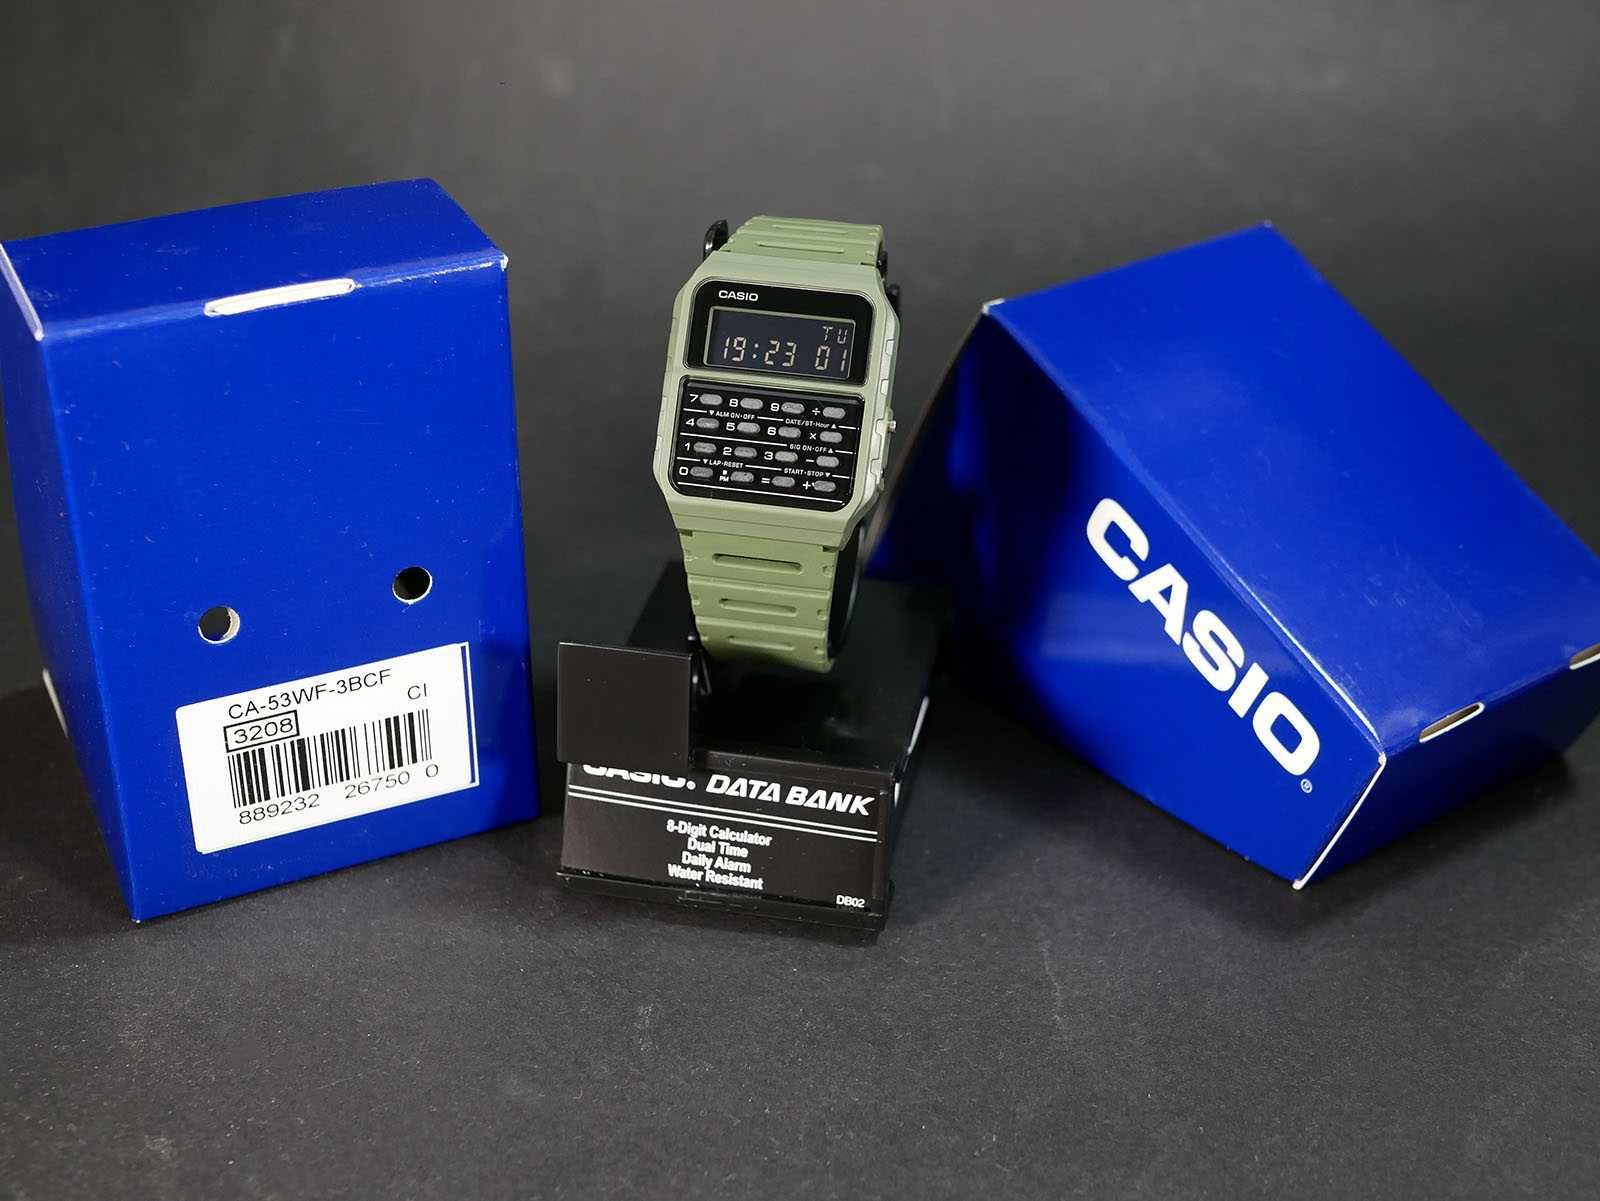 Годинник Casio CA-53WF-3BCF Green. Новий, з коробкою